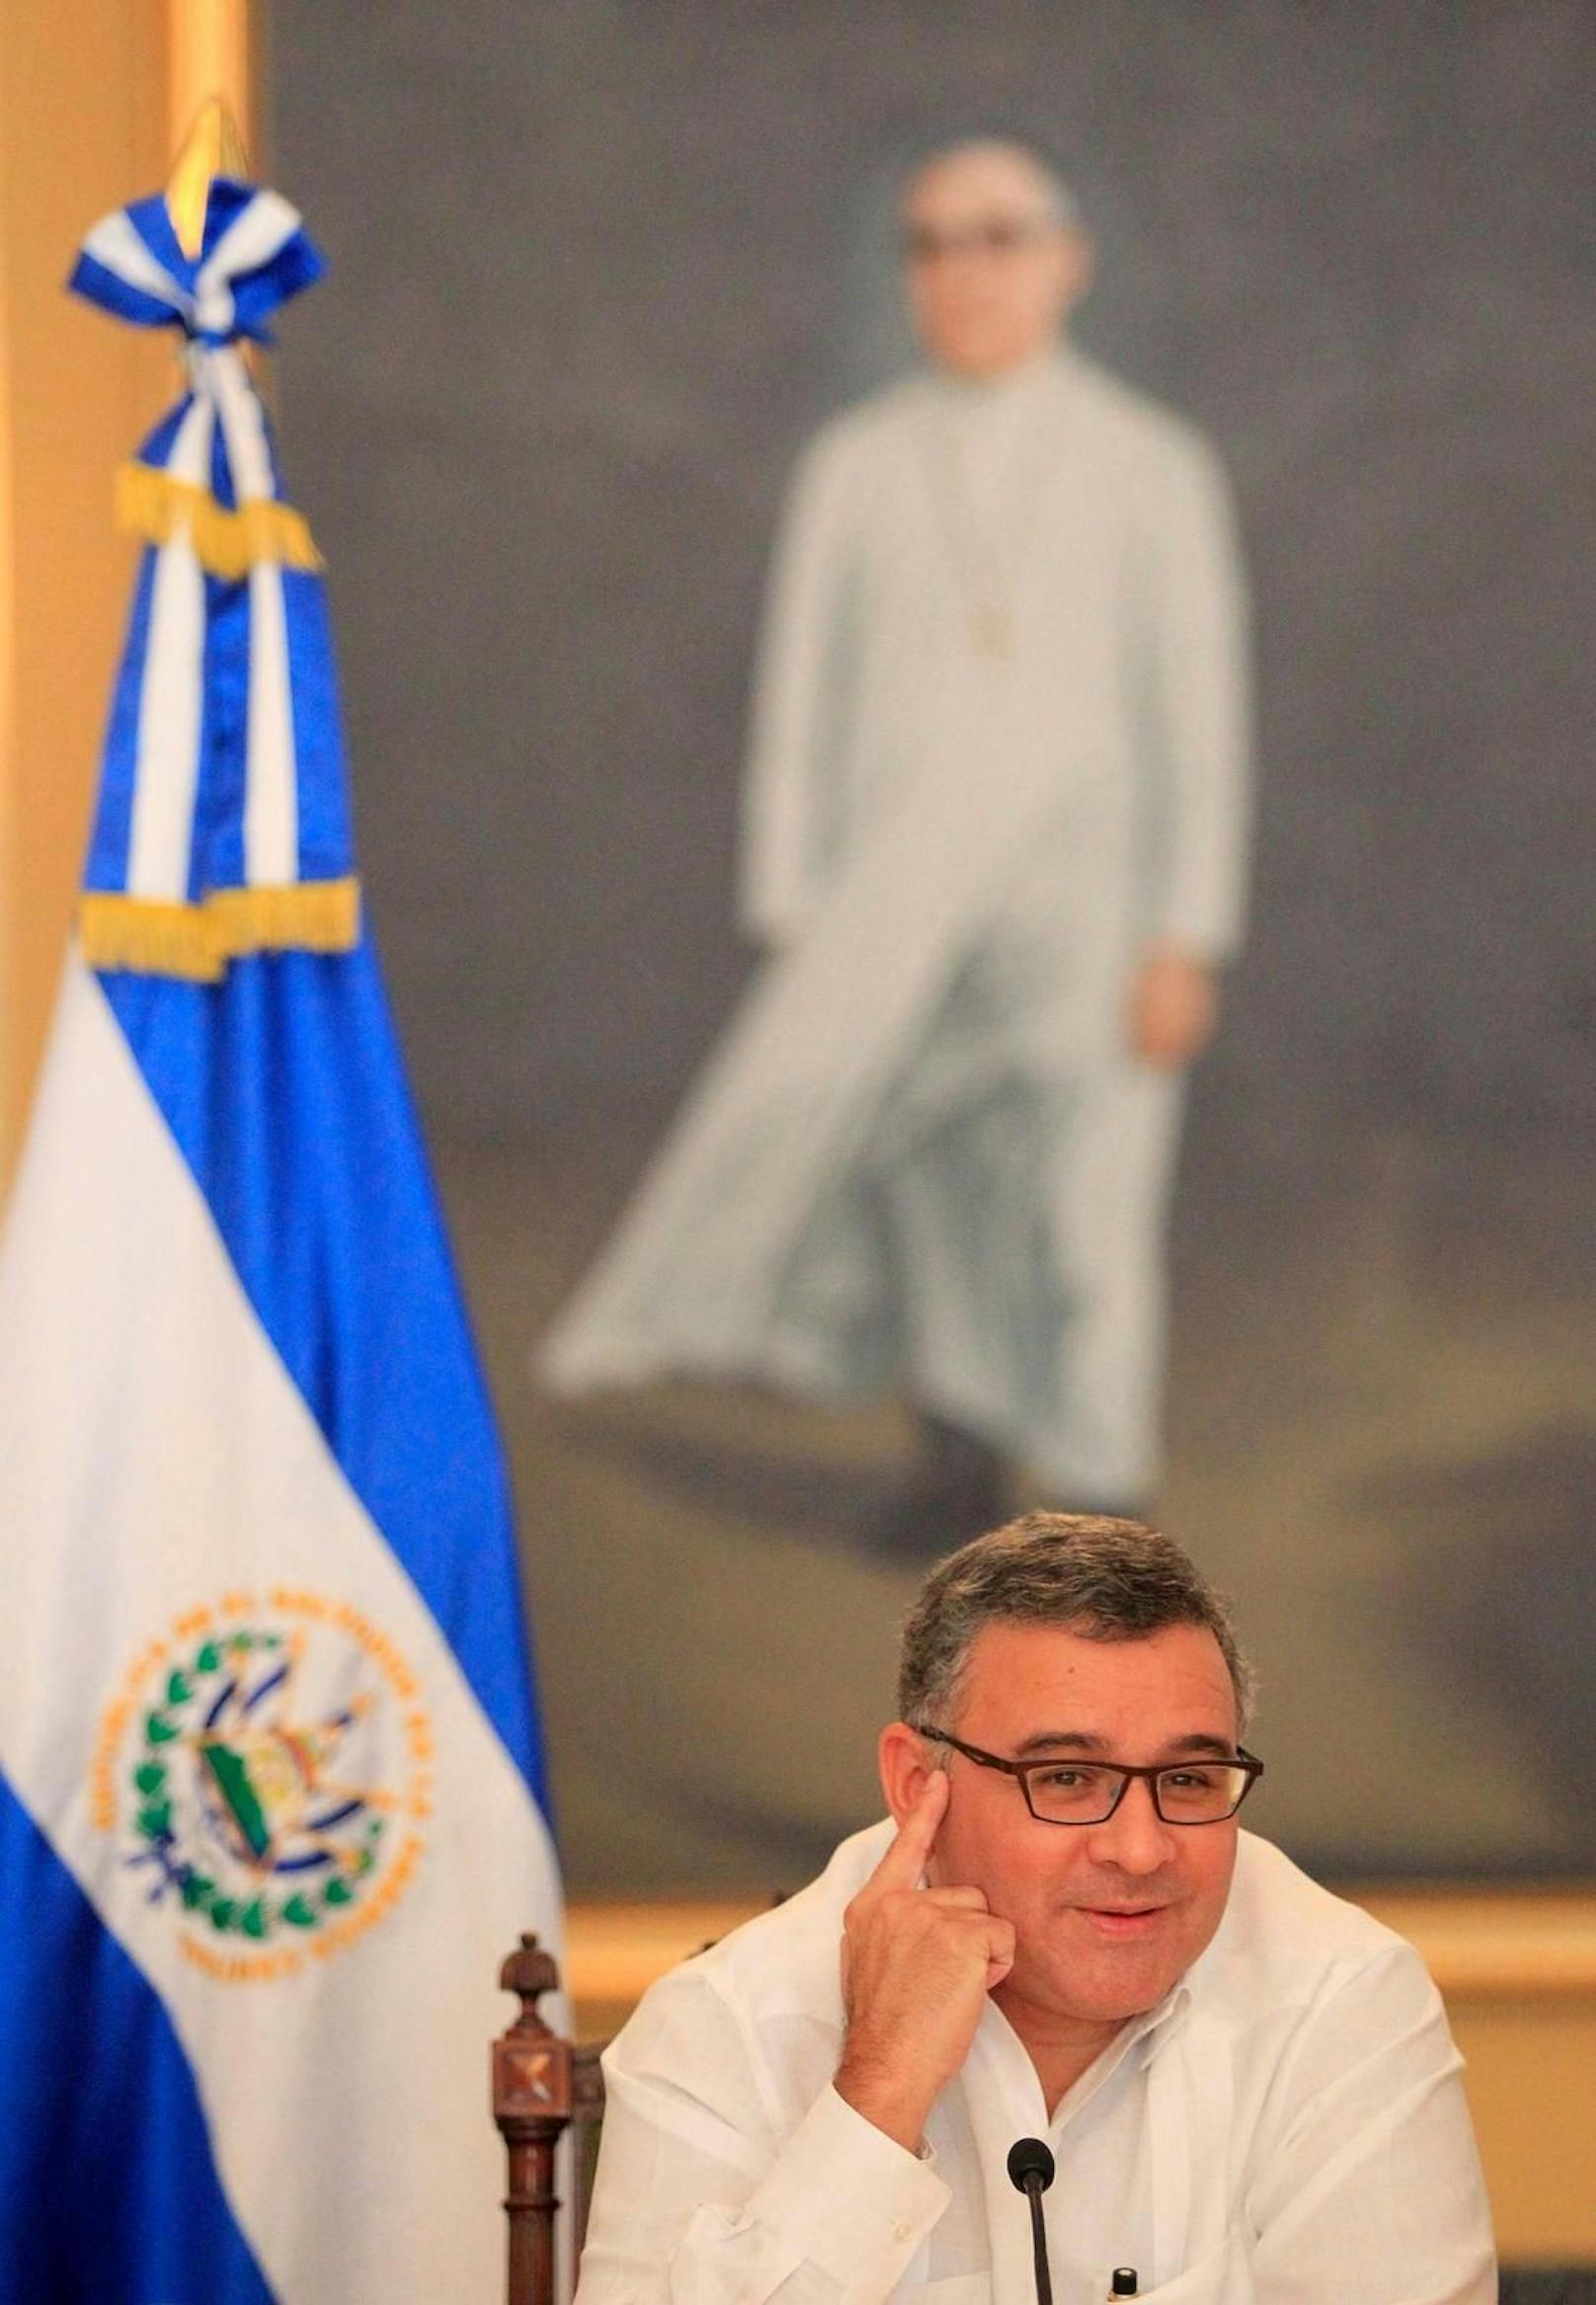 Die Idee, sich eine andere Staatsbürgerschaft zuzulegen, um einer Verhaftung zu entgehen, ist nicht neu. Schon Ceréns Vorgänger Mauricio Funes ließ sich in Nicaragua nieder, weil er per Haftbefehl gesucht wurde.